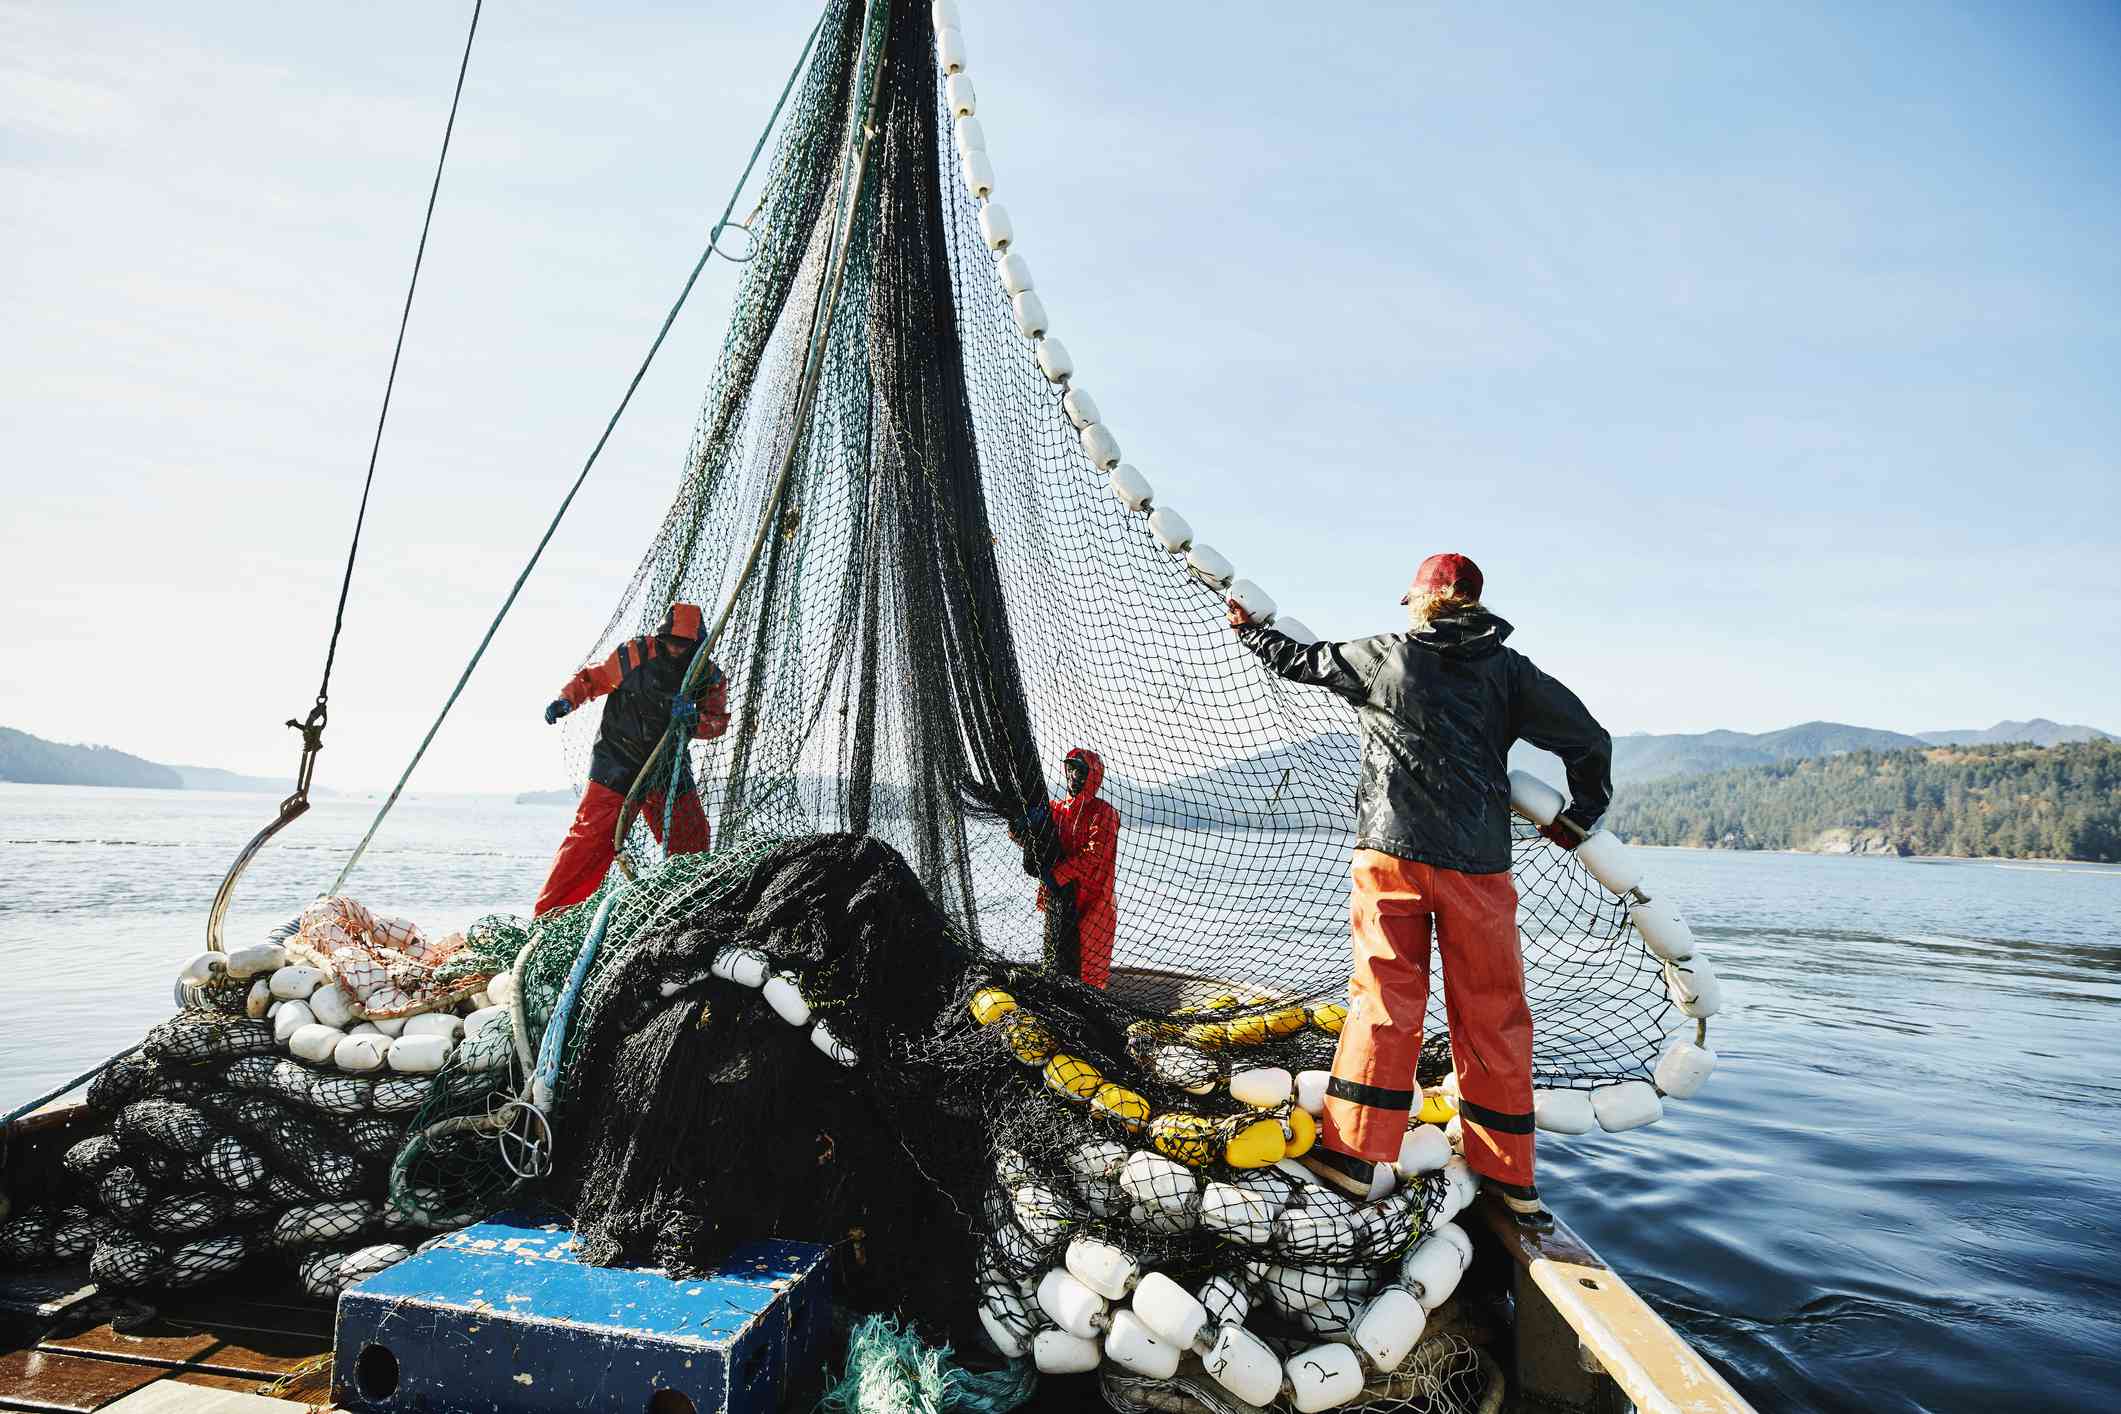 Pescadores maniobrando una red de pesca en un barco de pesca comercial